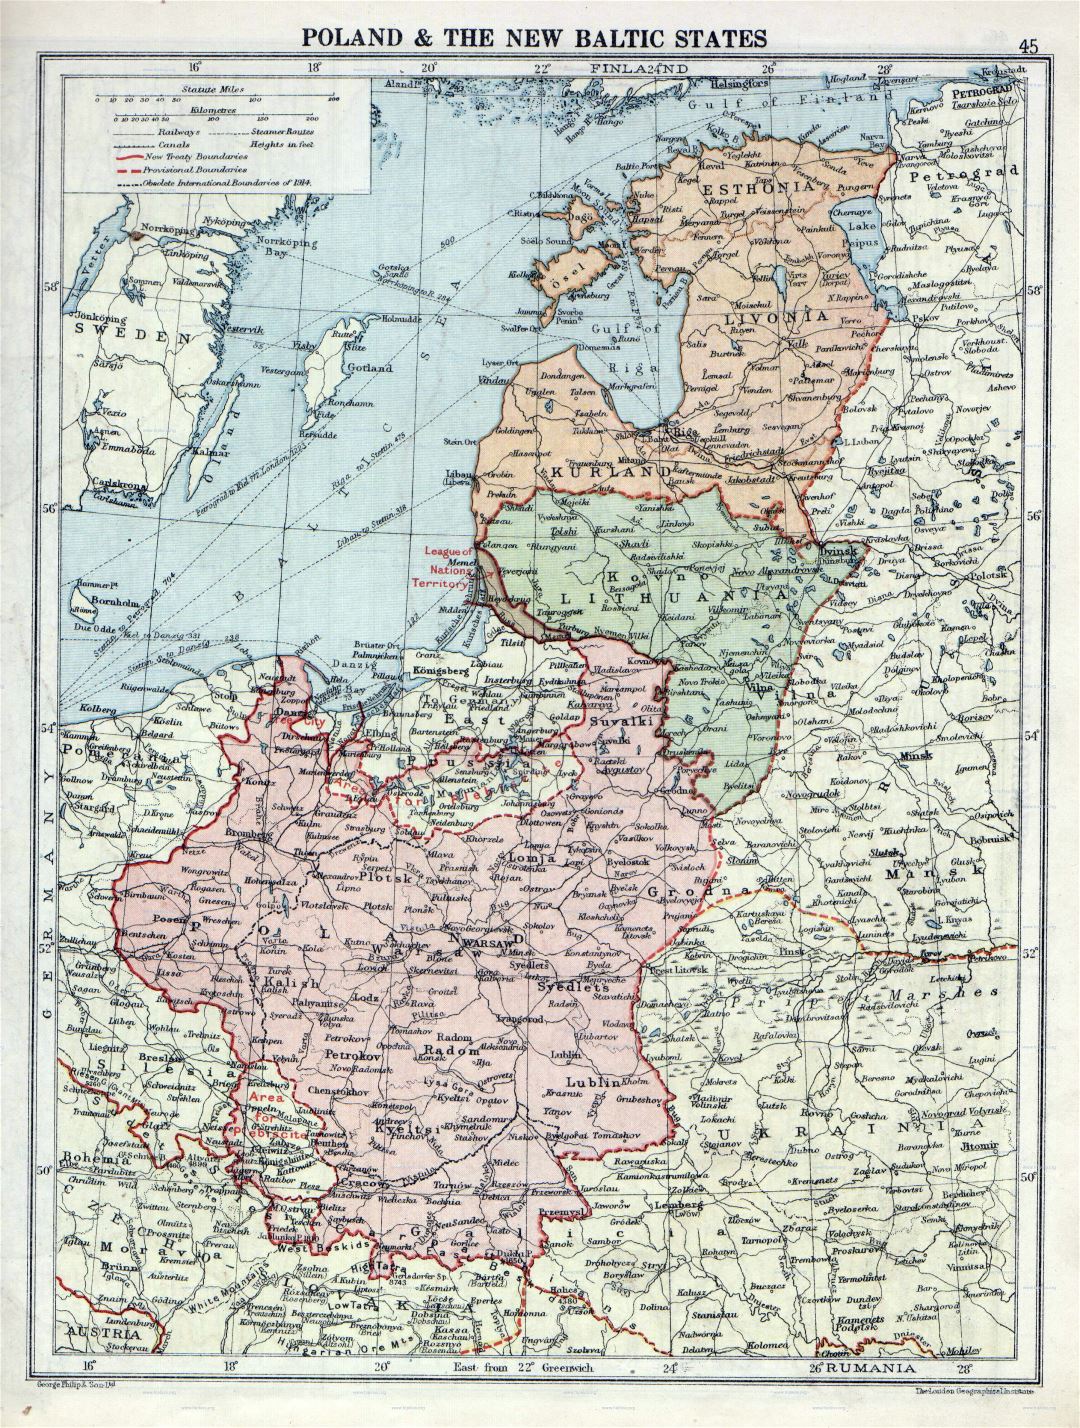 Grande detallado mapa antiguo de Polonia y los Estados Bálticos - 1920